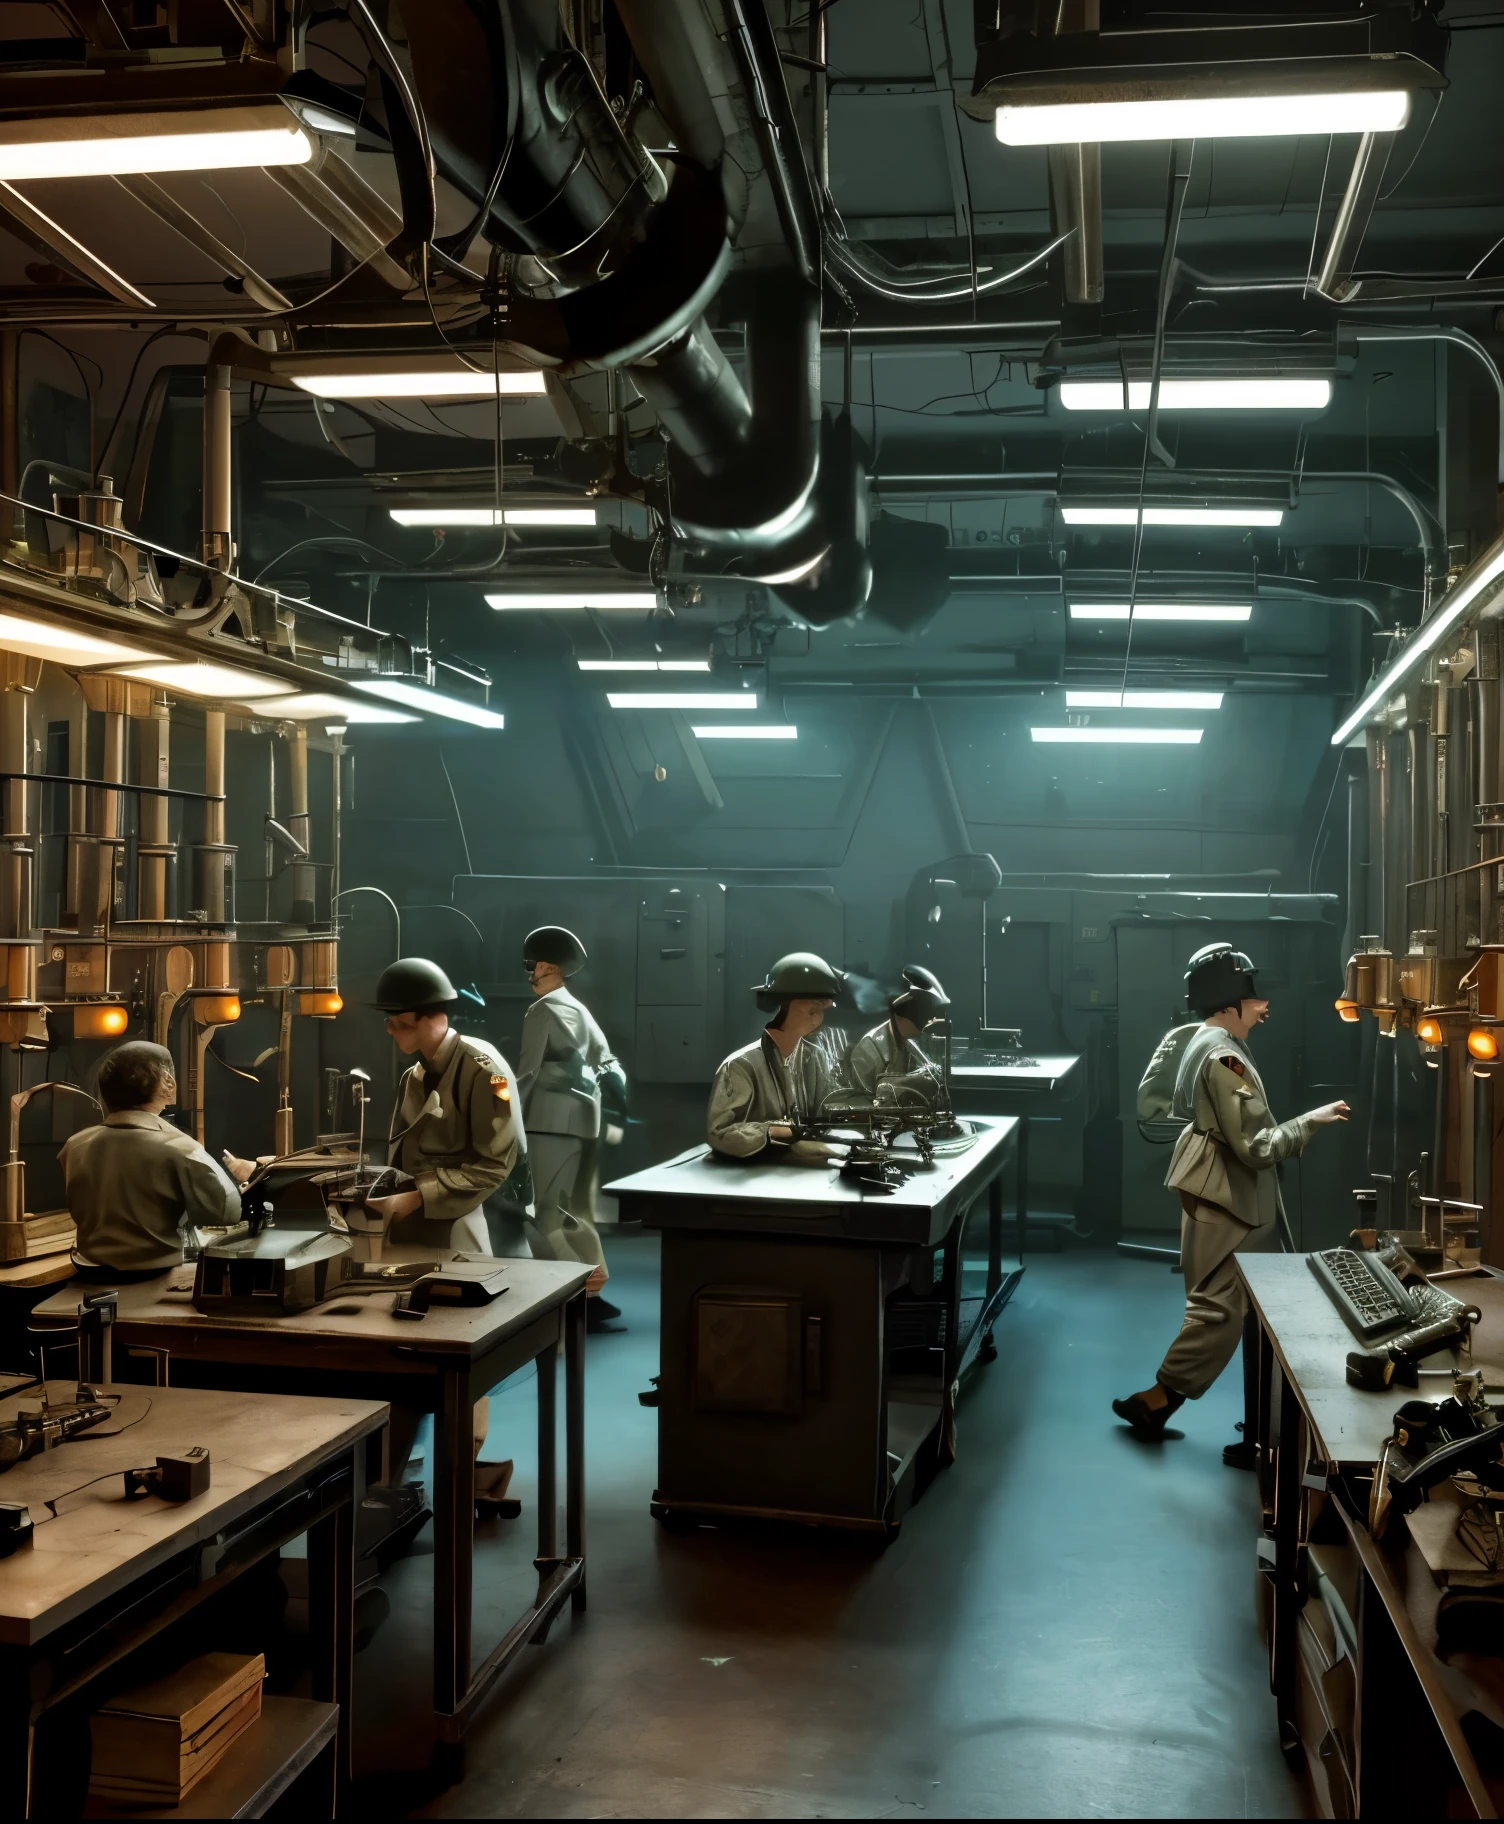  二戰復古科幻場景，實驗室桌上排列著大腦, 周圍環繞著老式科學設備和閃爍的燈光